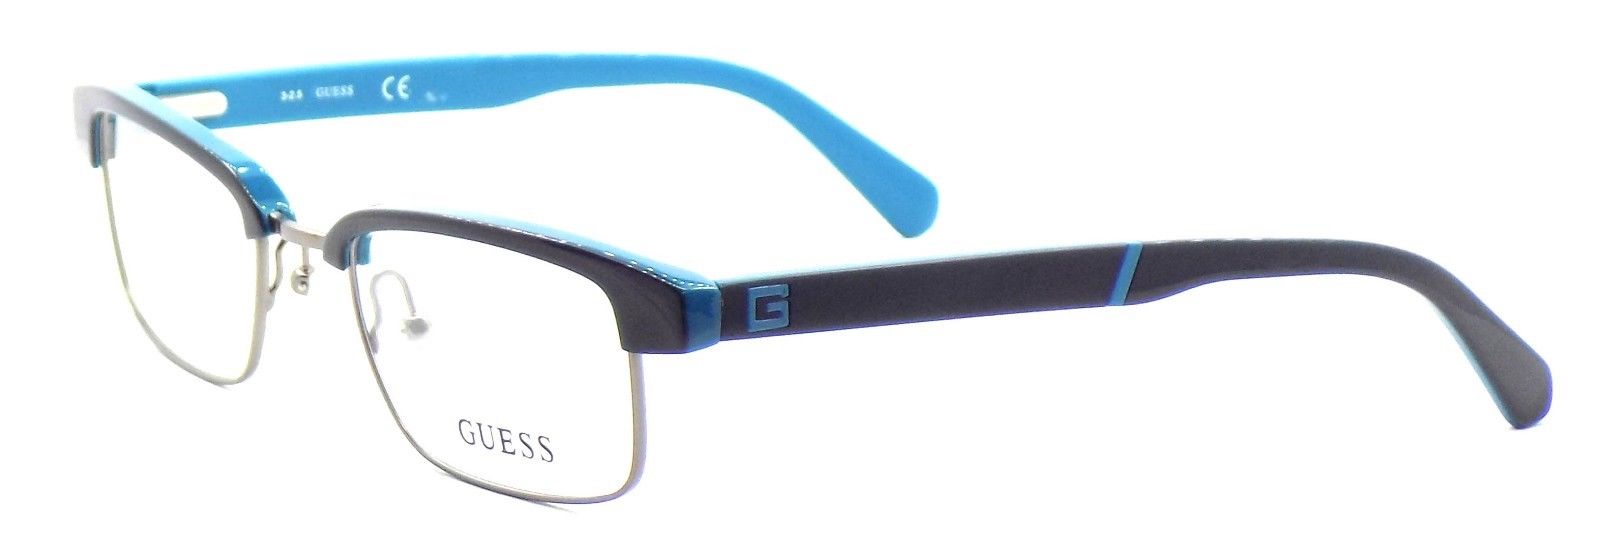 1-GUESS GU1905 090 Men's Eyeglasses Frames 48-20-140 Black / Teal + Case-664689774272-IKSpecs